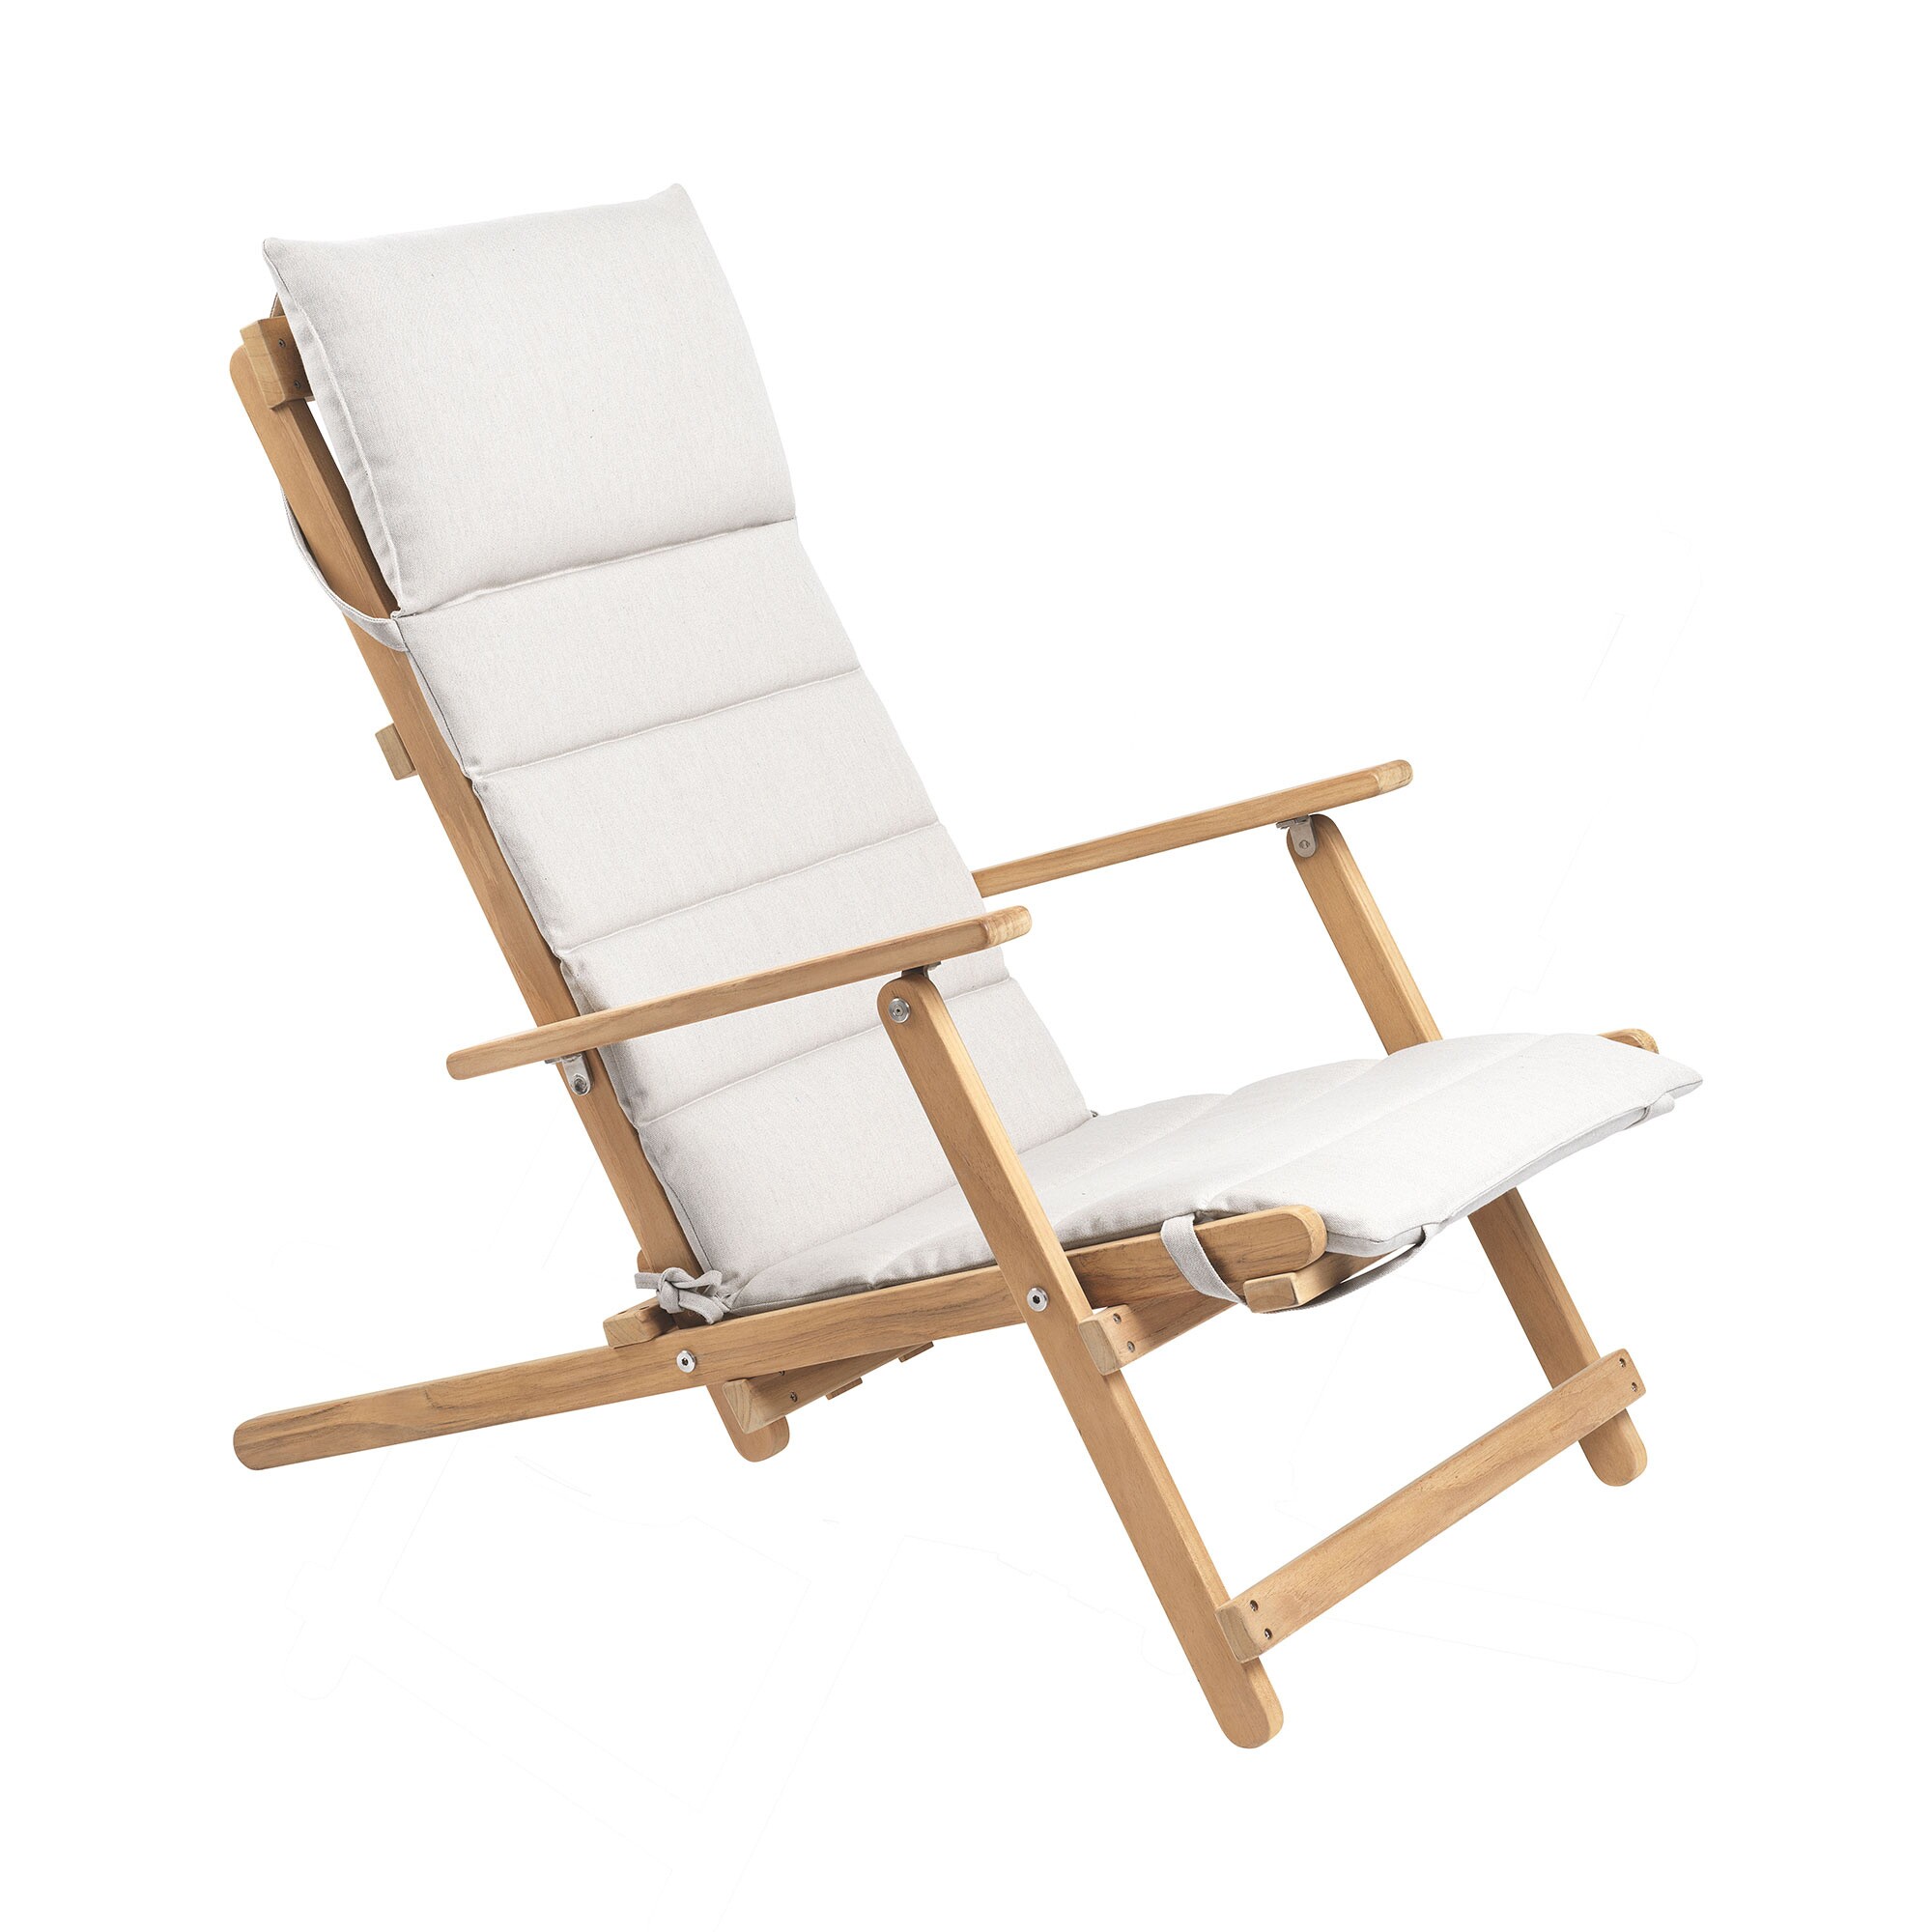 Carl Hansen Bm5568 Deck Chair Ambientedirect